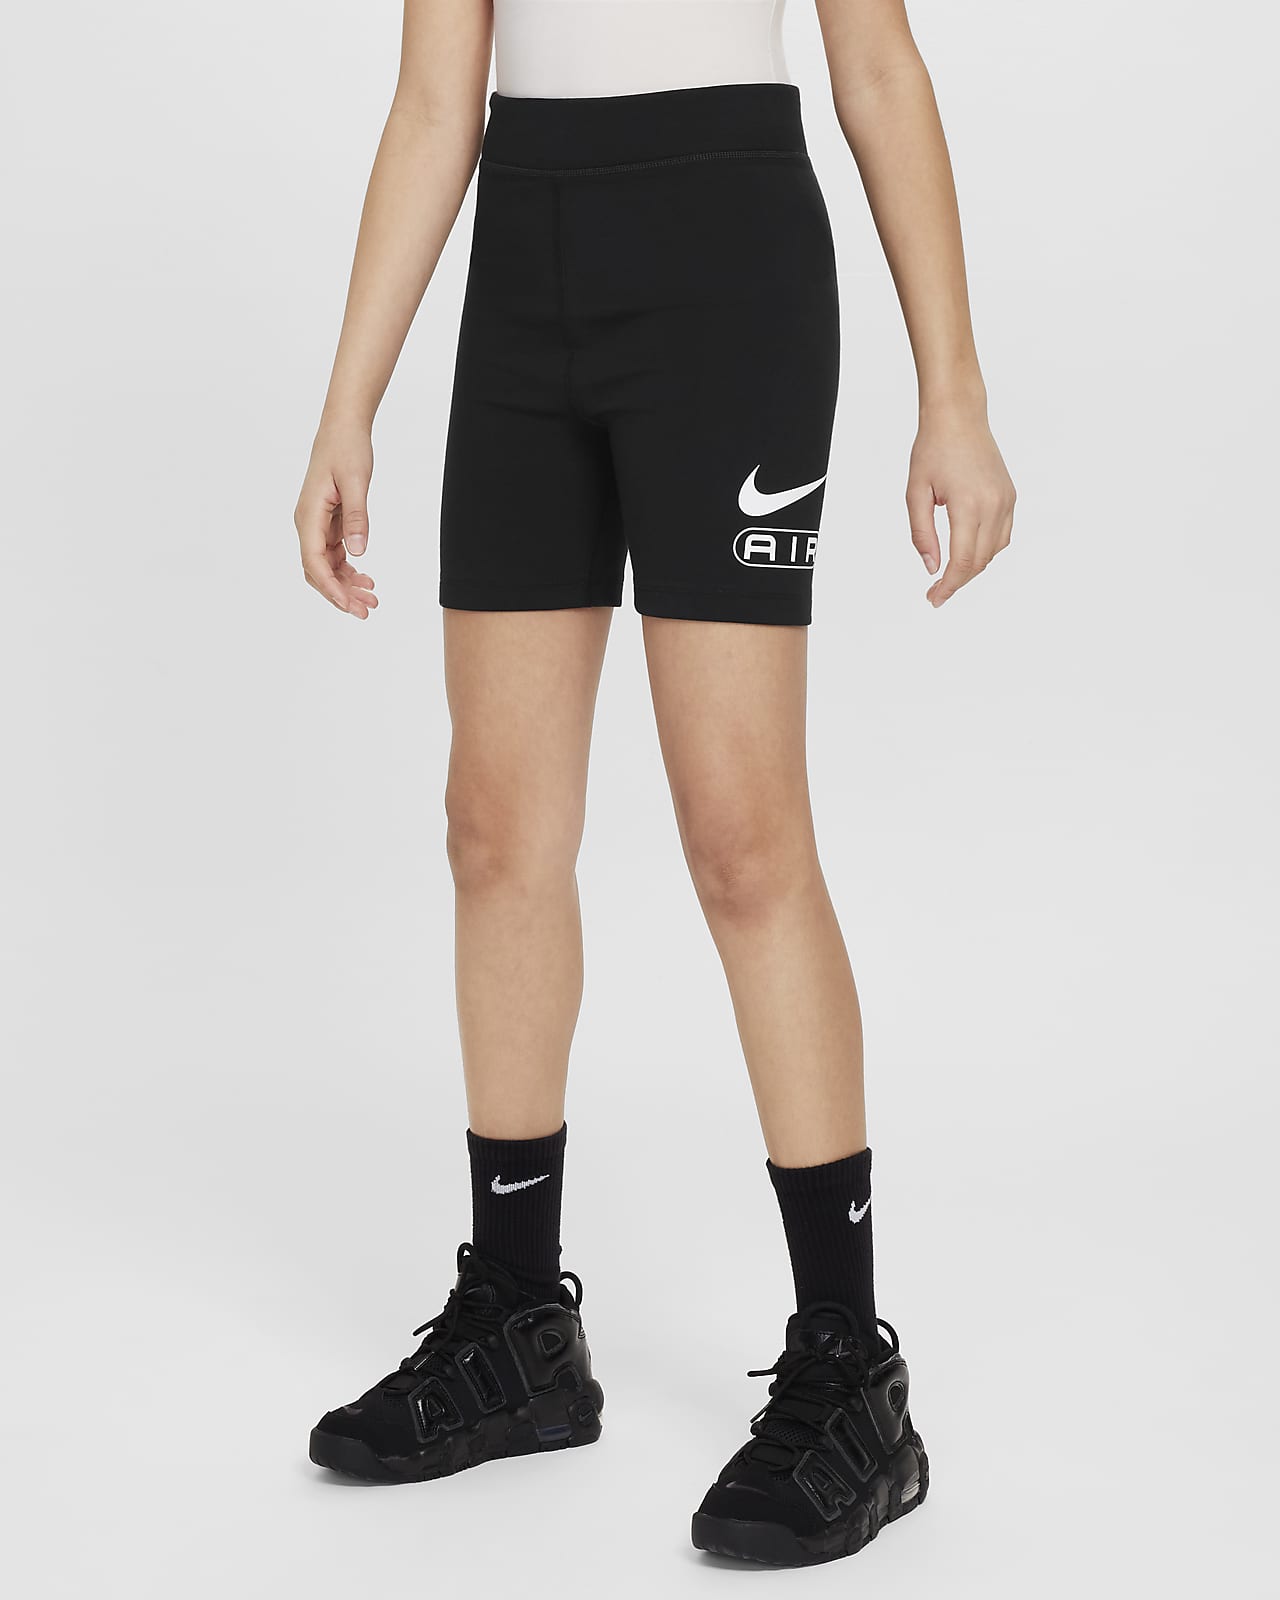 Calções tipo ciclista Nike Air para rapariga